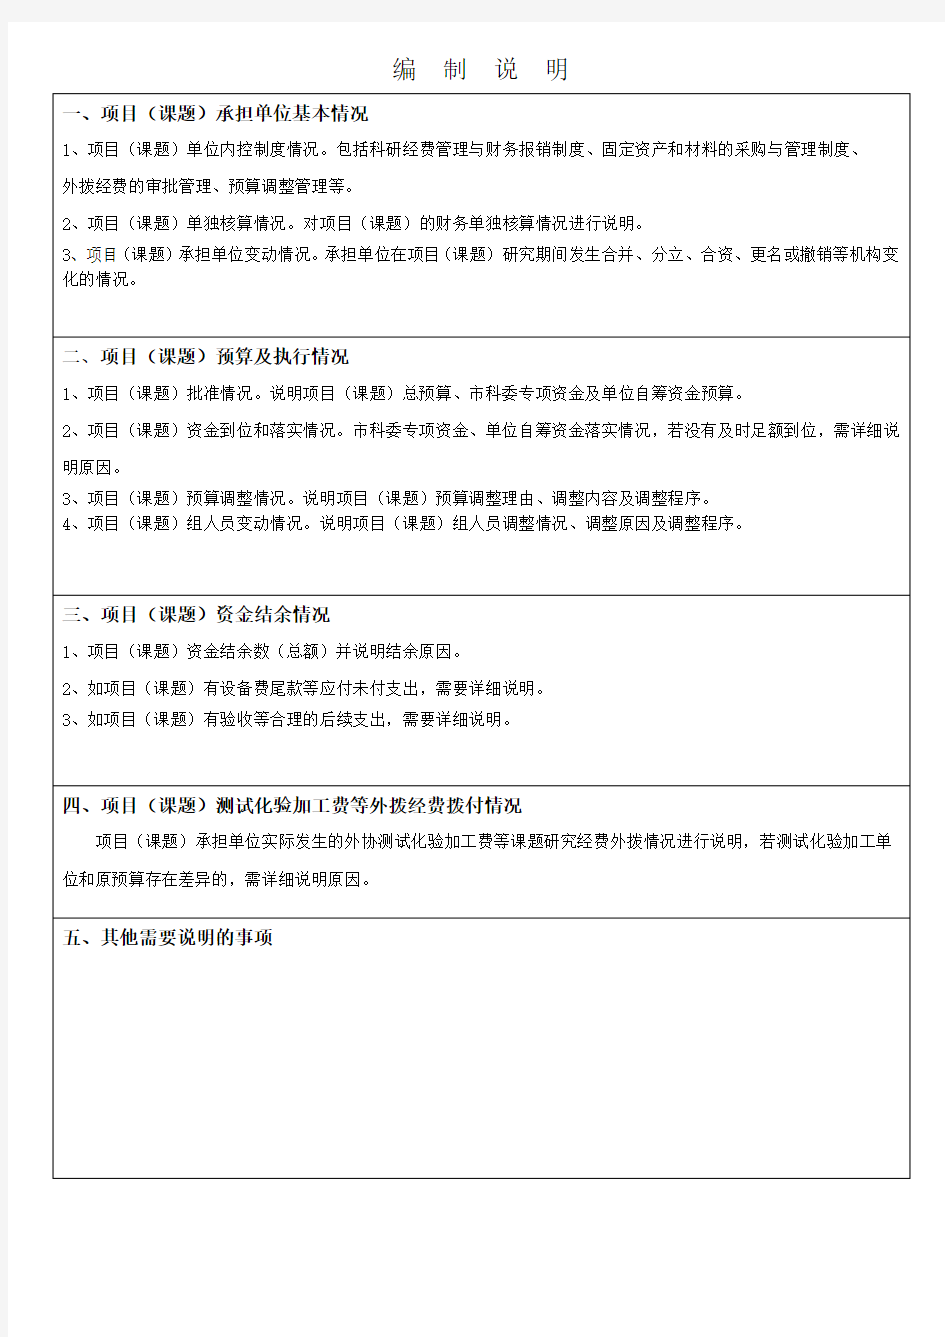 (完整版)上海市科研计划项目经费预算执行情况表